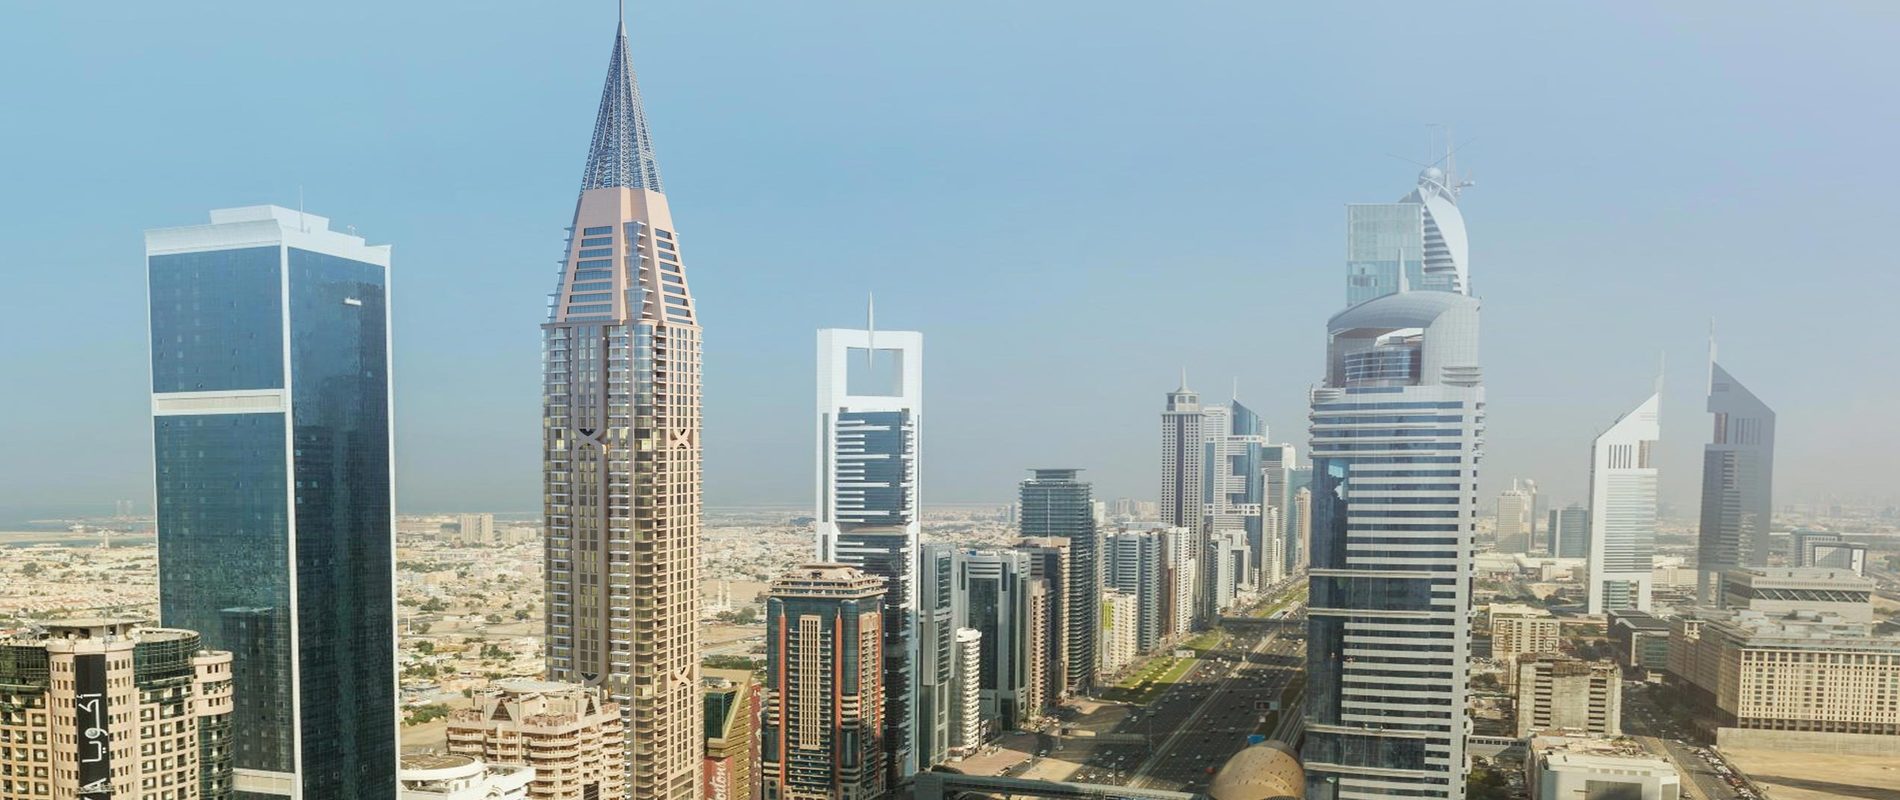 A Tower apartments - Downtown Dubai.